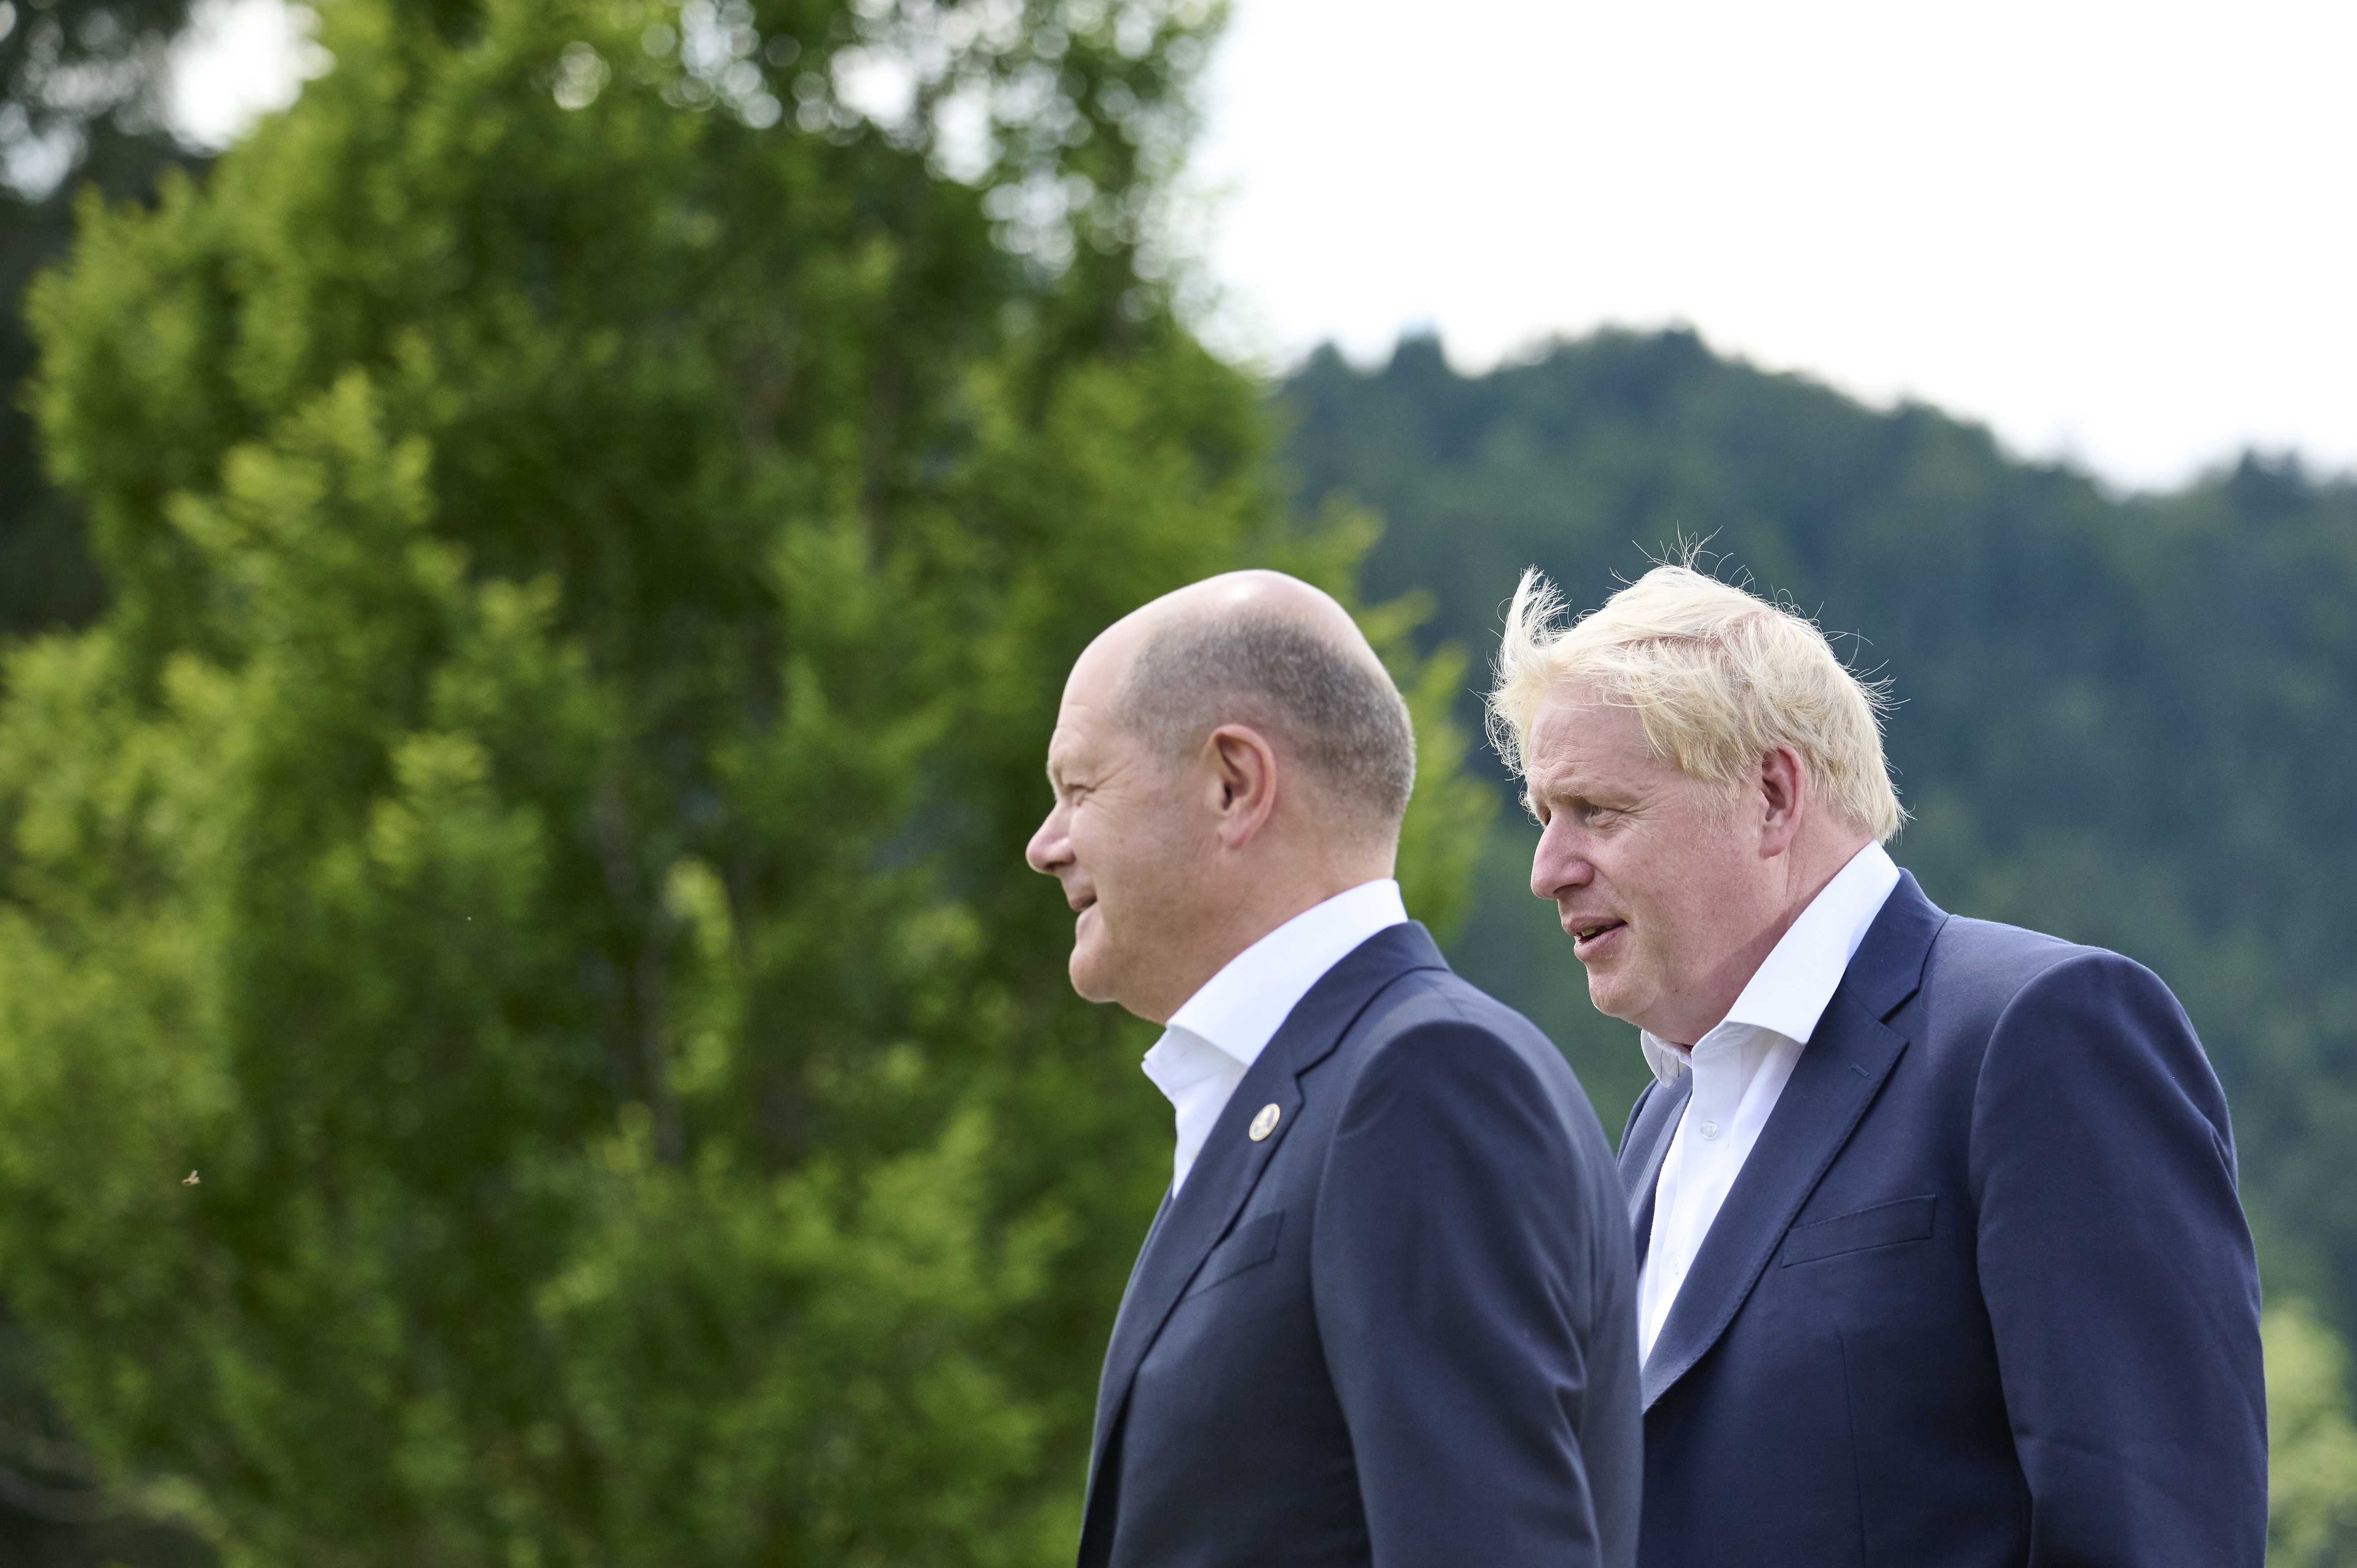 Bundeskanzler Olaf Scholz und Boris Johnson (Premierminister Großbritannien) auf dem Weg zum Familienfoto.